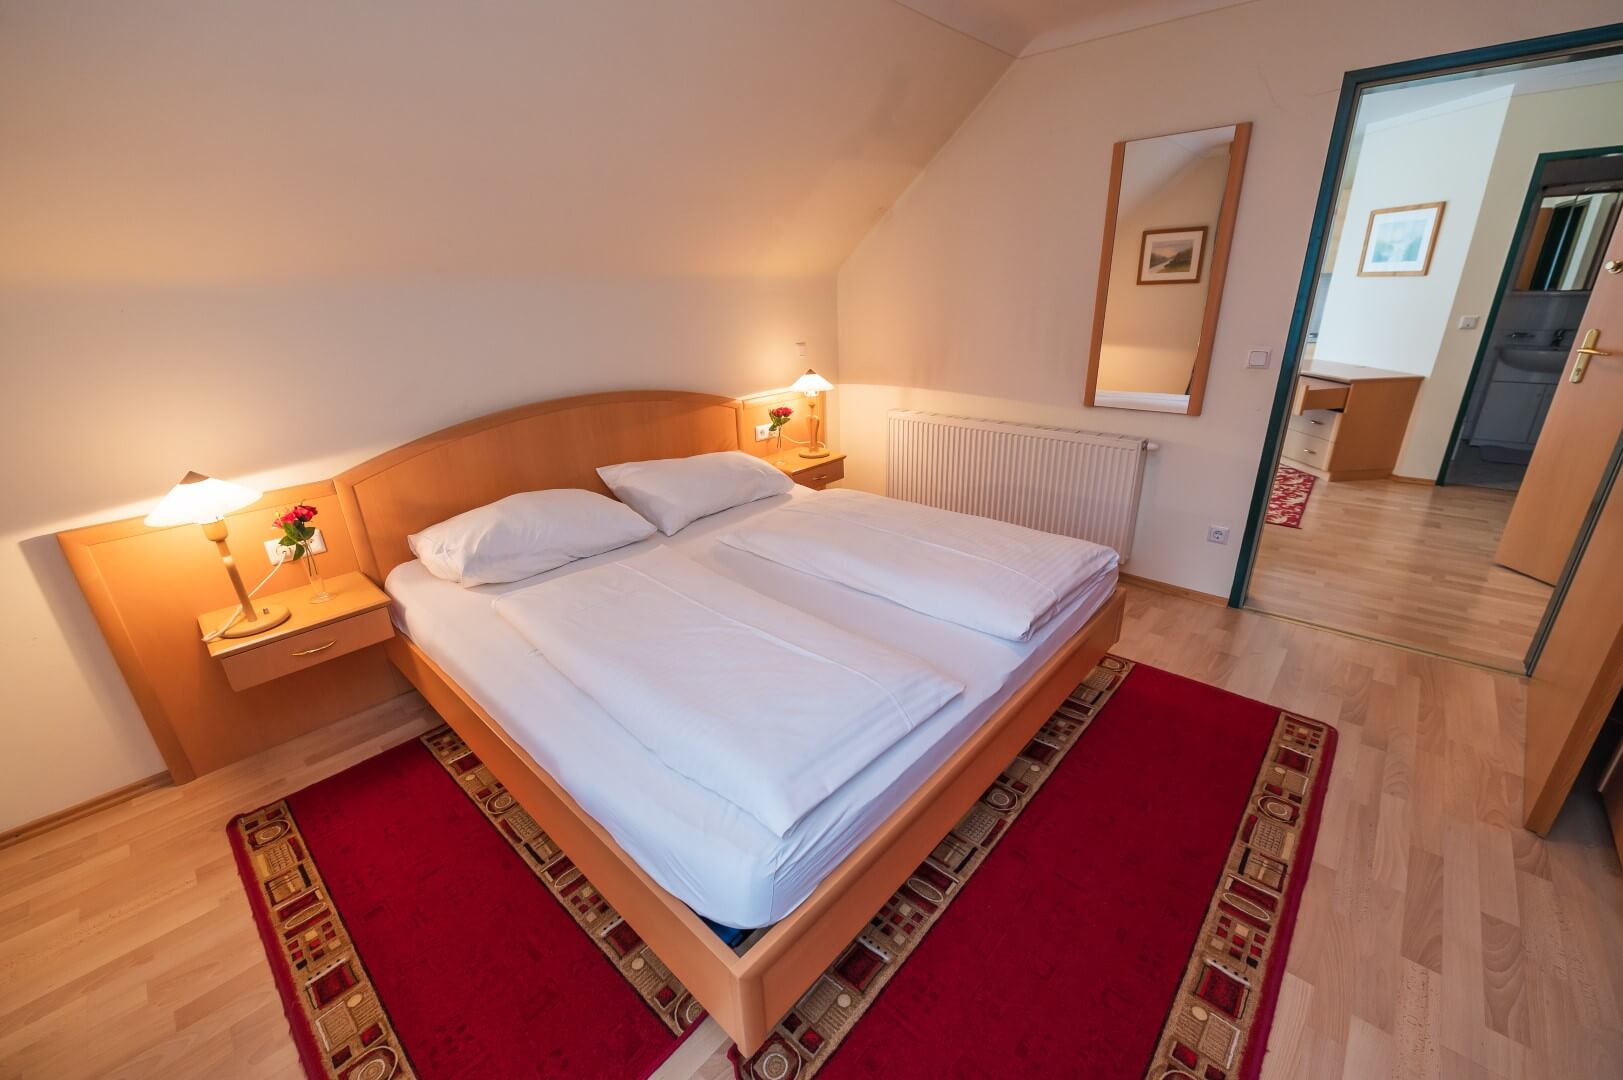 Ein gemütliches Doppelzimmer mit Parkettboden, warmen Farben und angrenzendem Badezimmer im Gasthaus Treiber.